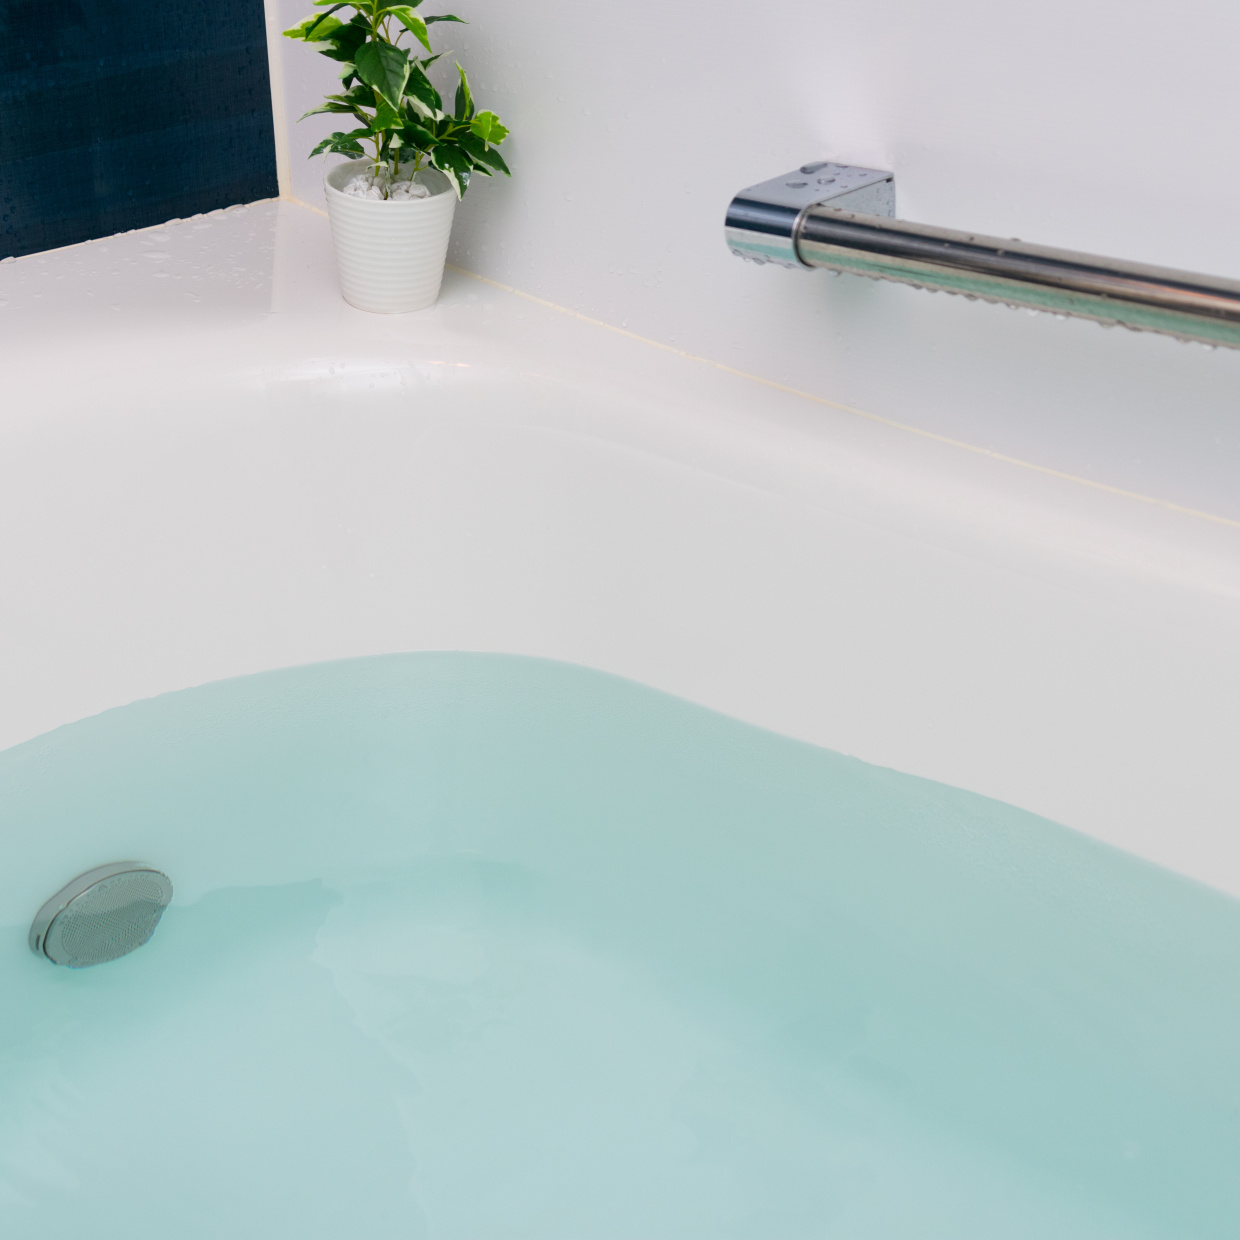  お風呂の入り方で変わる。光熱費の節約につながる「入浴の節電・節ガス習慣」 